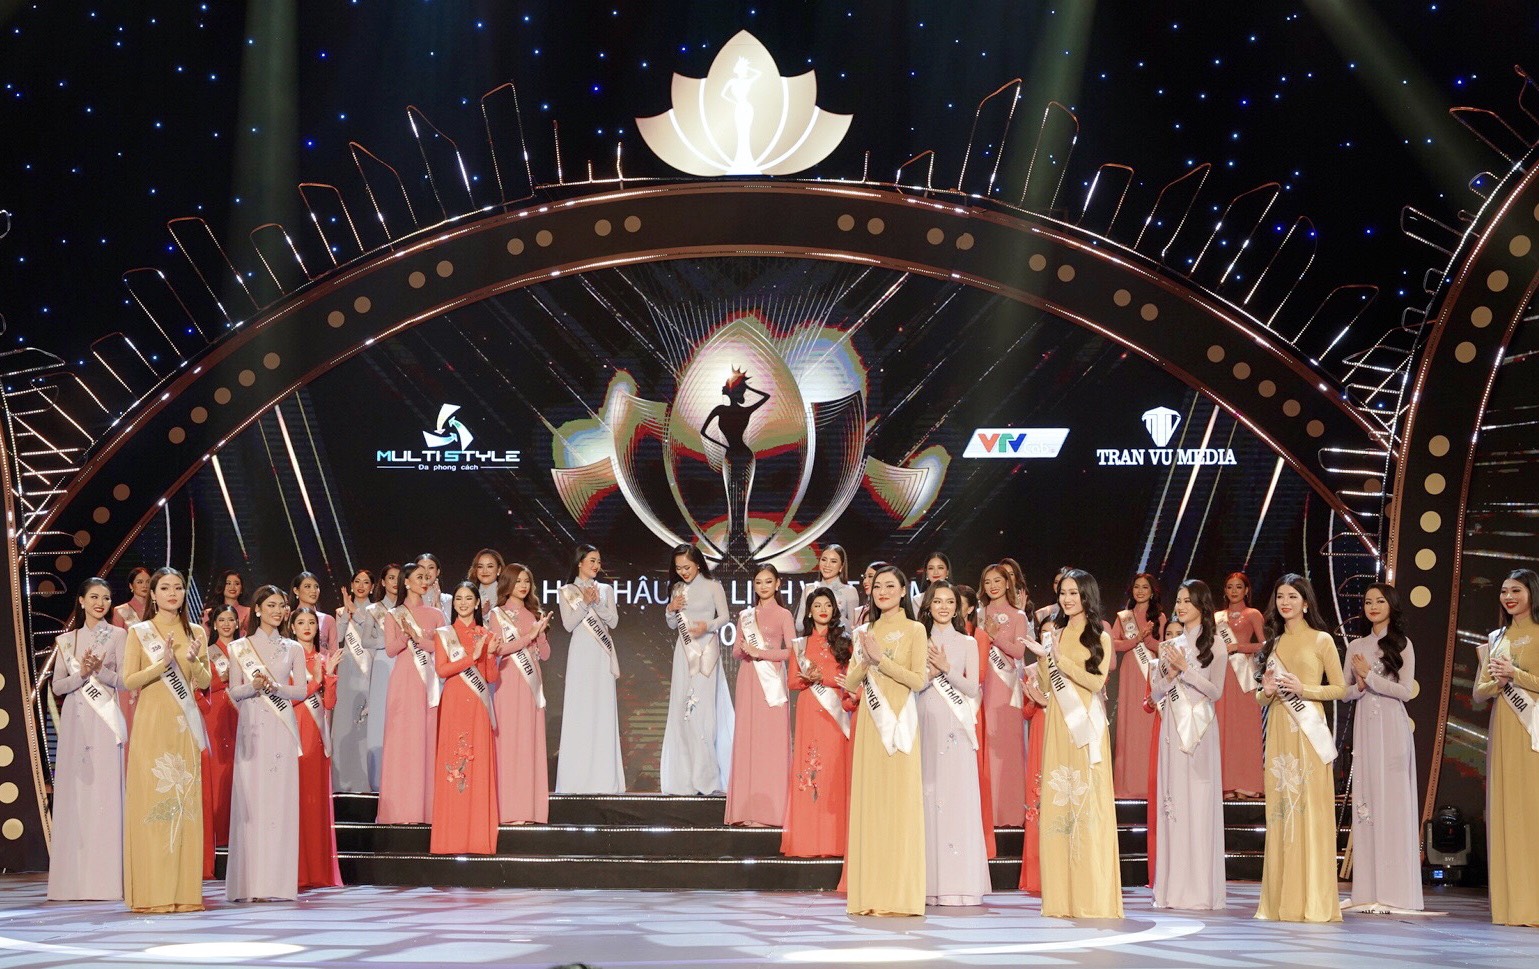 Bán kết Hoa hậu Du lịch Việt Nam 2022: 'Cháy’ hết mình trên sân khấu, 40 thí sinh xuất sắc đi tiếp vào đêm Chung kết - Ảnh 10.